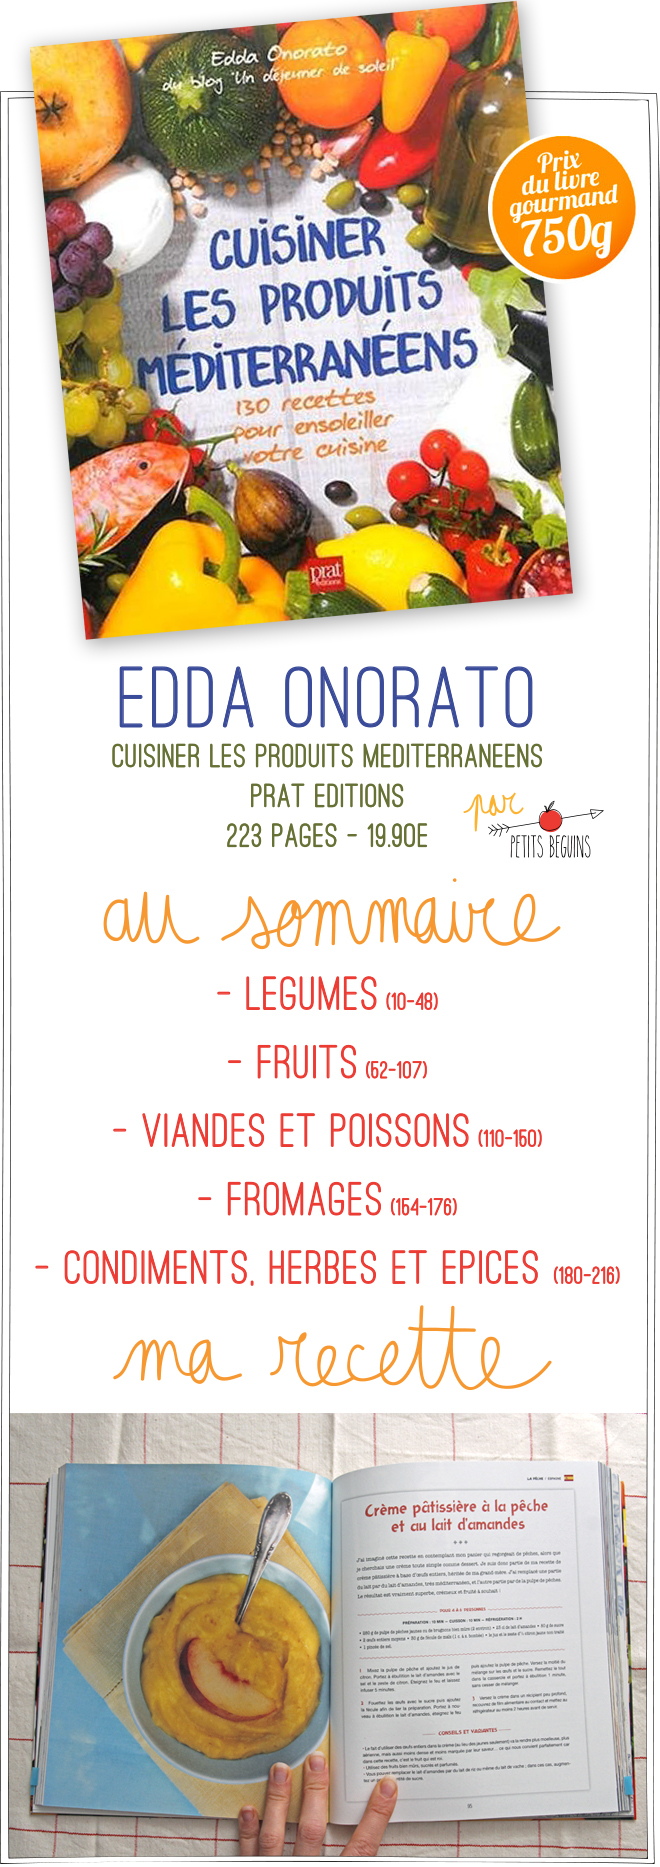 Prix 2014 du livre gourmand - 750gr et Petits Béguins